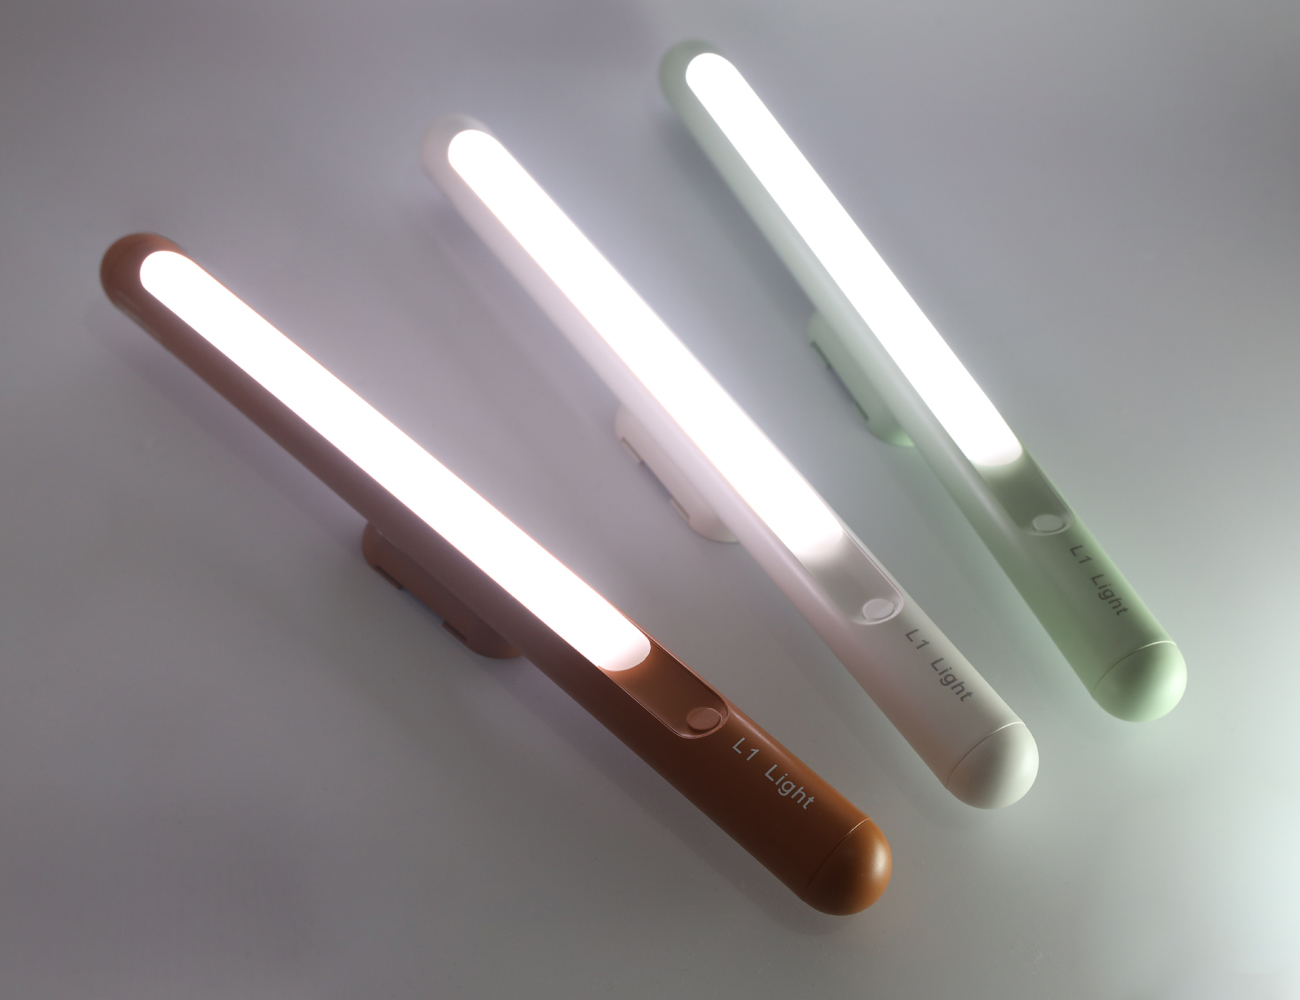 LED Bar Lamp